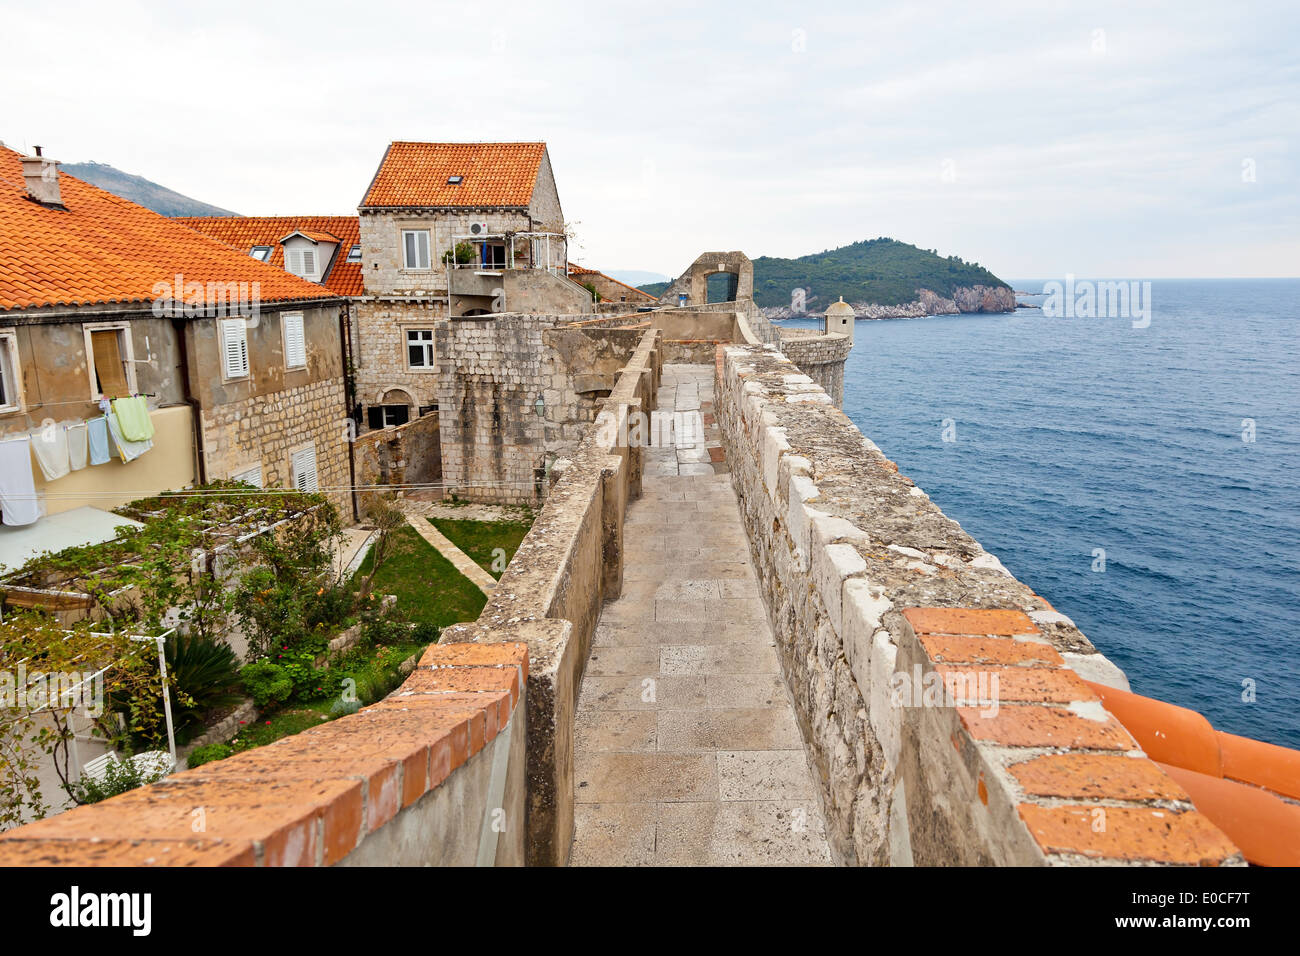 La ville de Dubrovnik en Croatie. Du patrimoine culturel mondial de l'Unesco. Mur de la ville, die Stadt Dubrovnik en Croatie. Weltkulture l'Unesco Banque D'Images